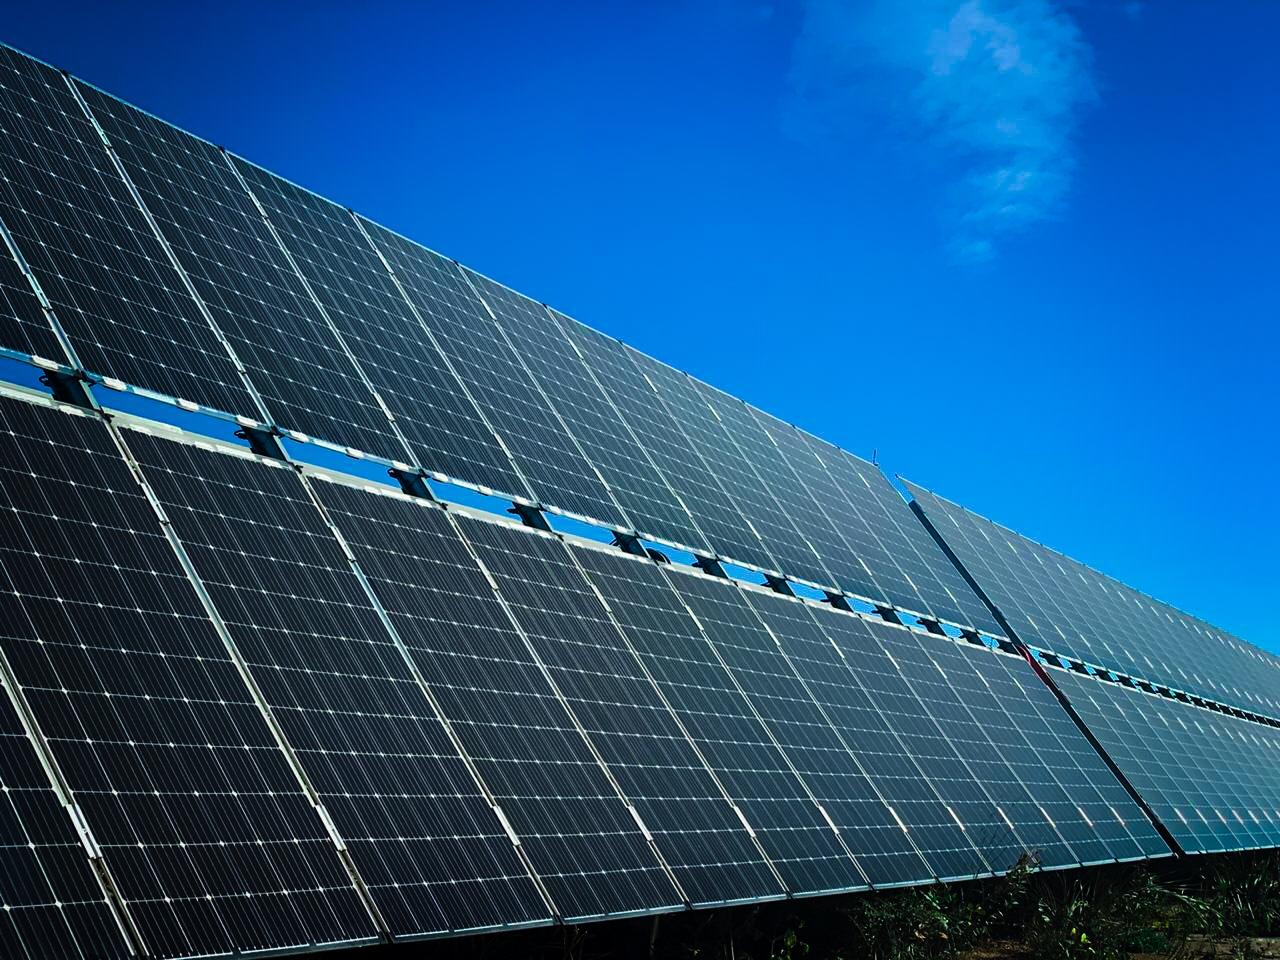 Placas solares sobre un seguidor solar en un proyecto fotovoltaico